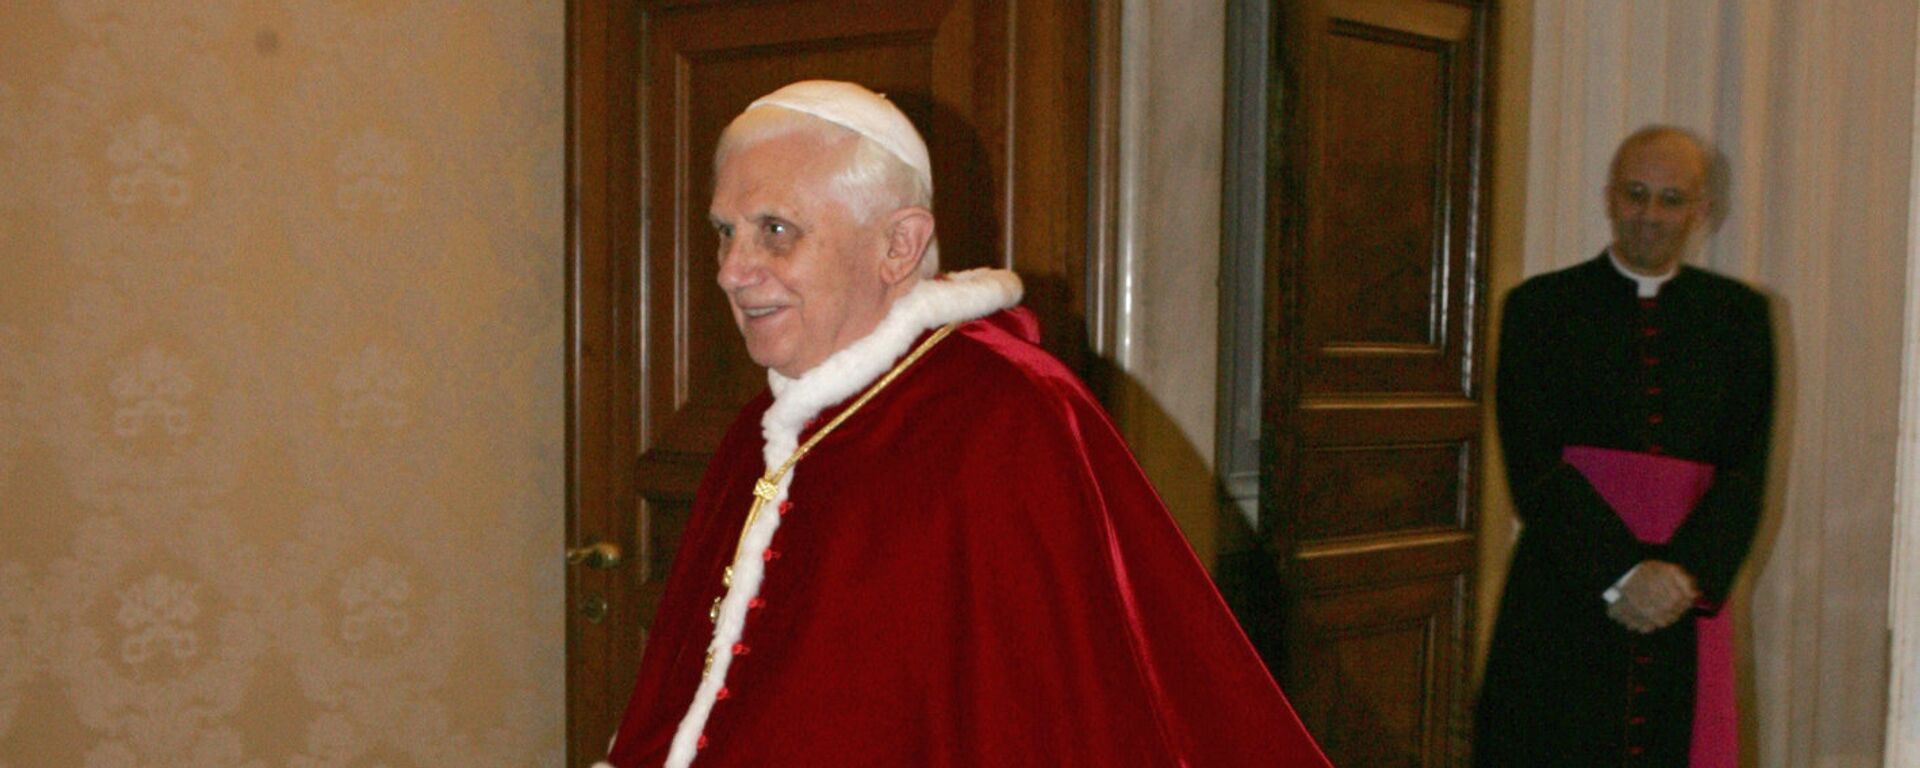 Бивши Папа Римски Бенедикт XVI - Sputnik Србија, 1920, 31.12.2022